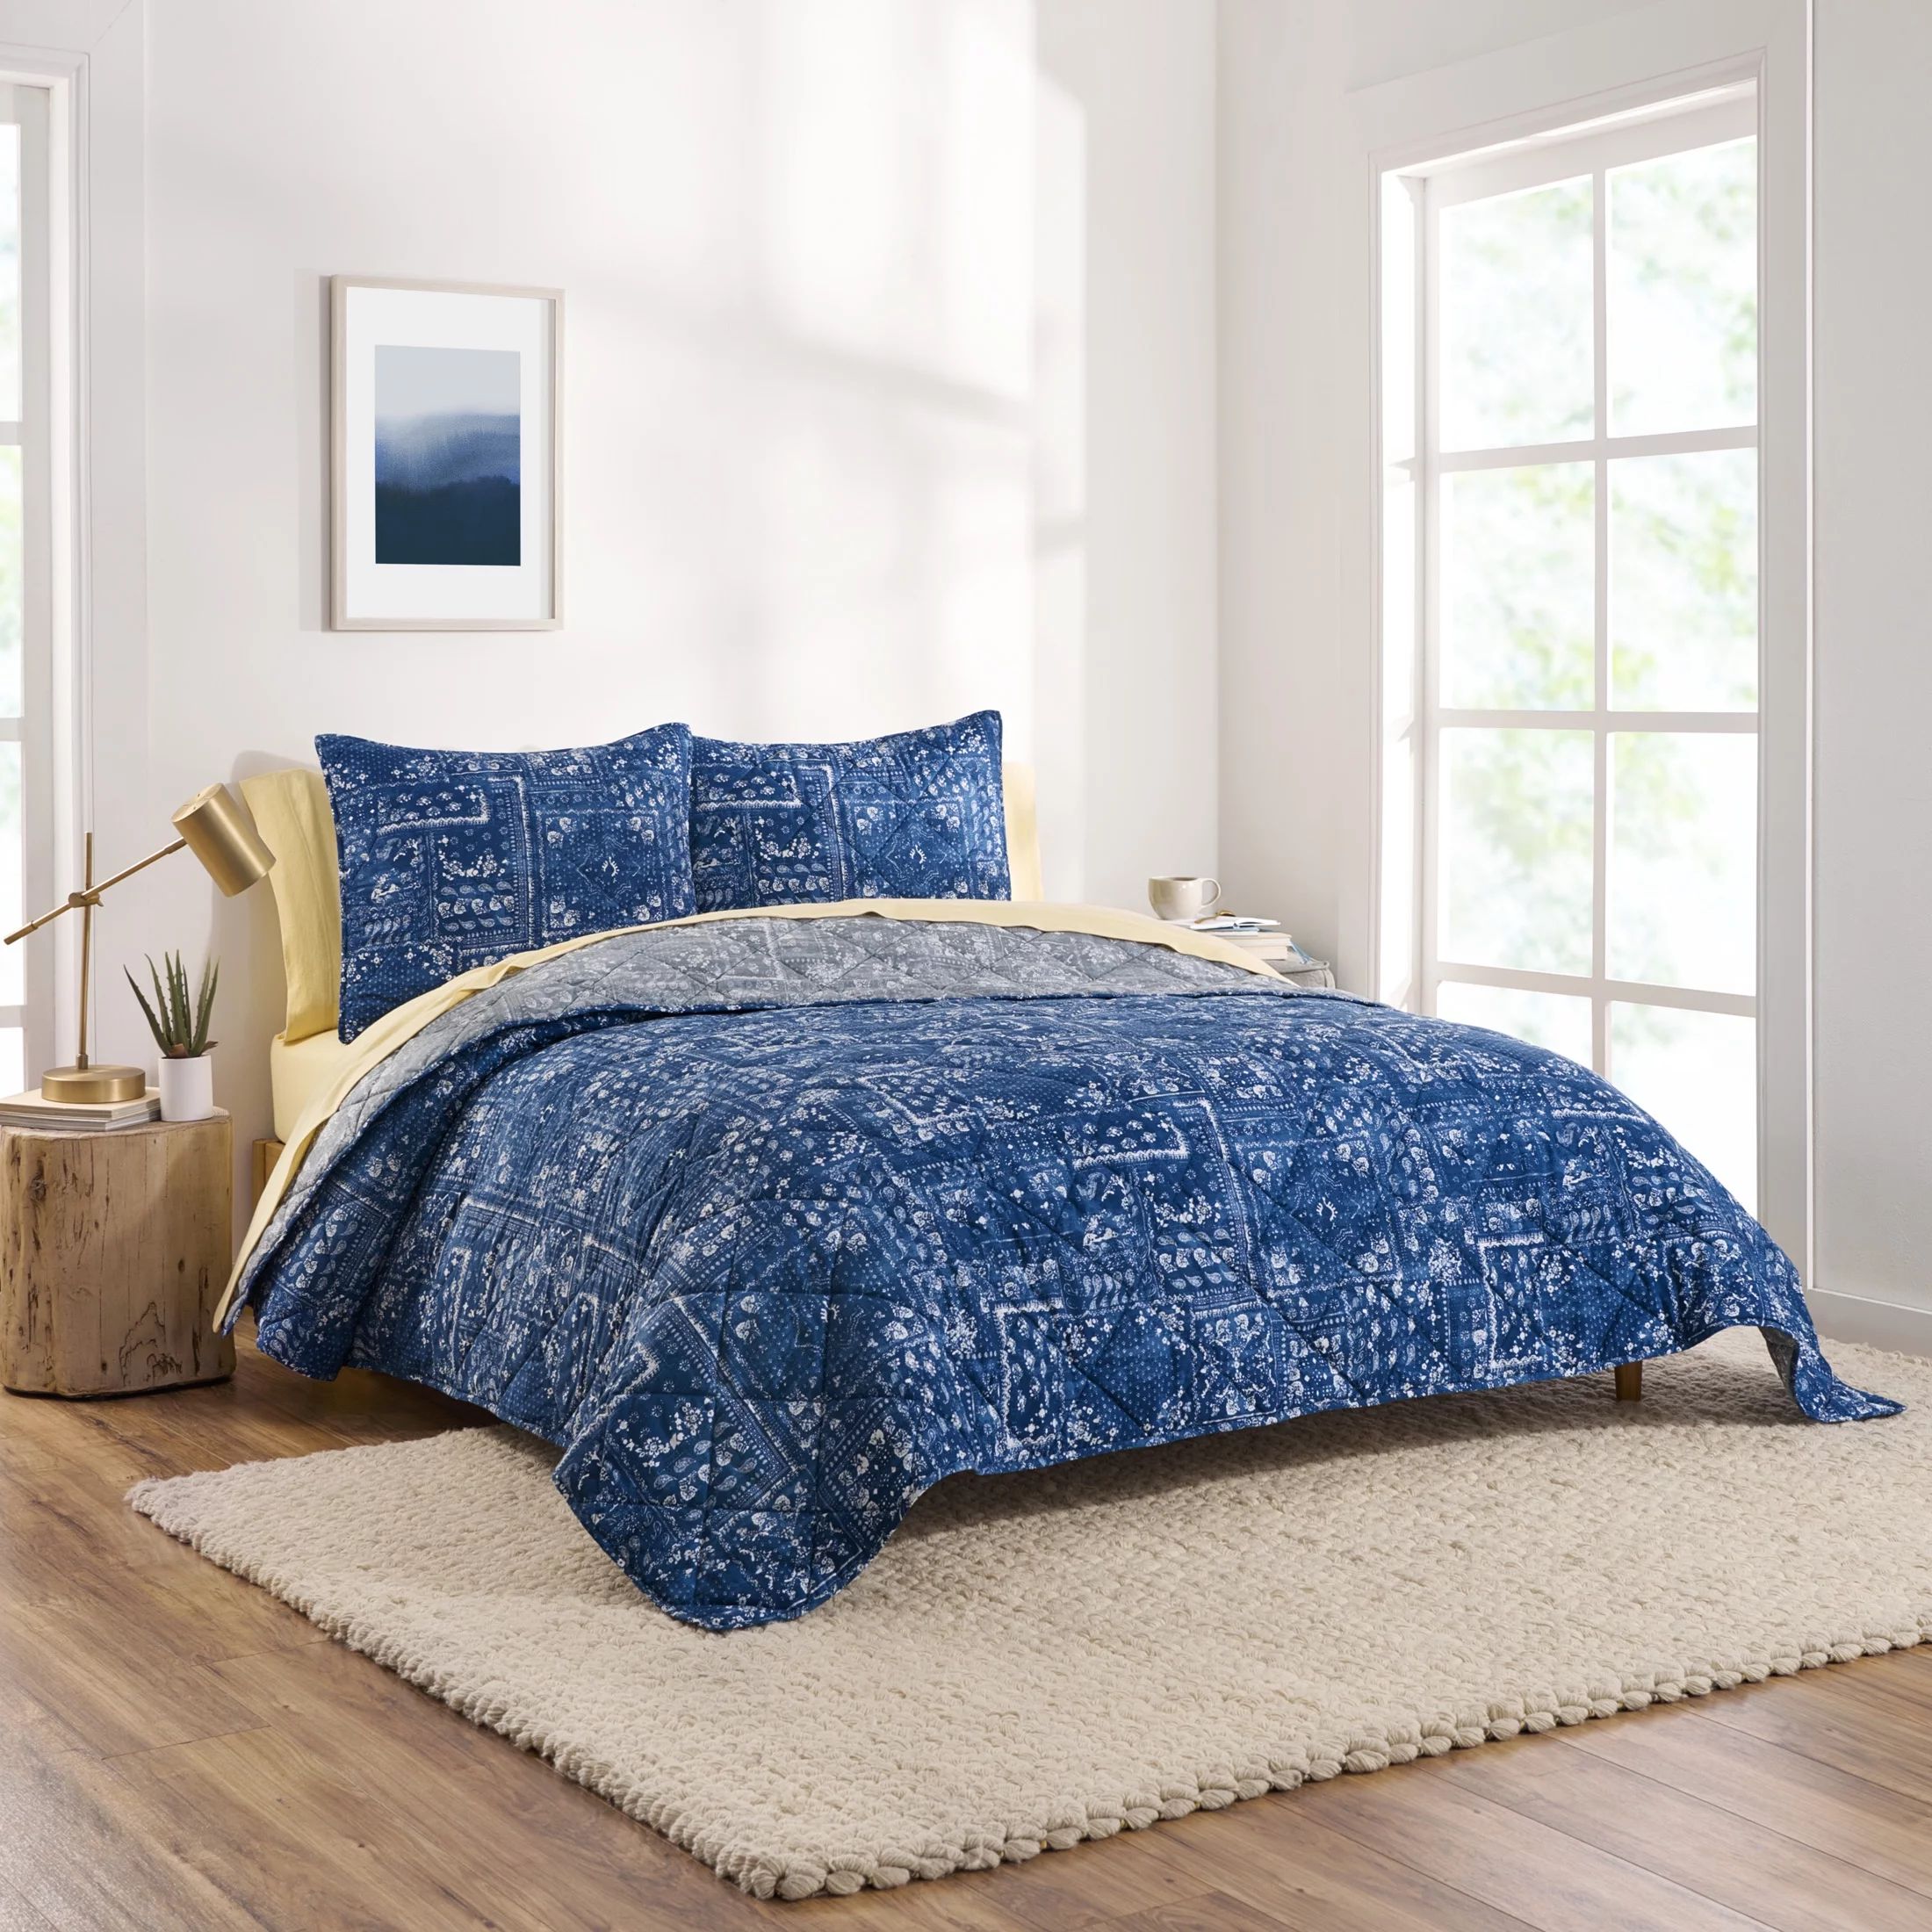 Gap Home Bandana Patchwork Reversible Organic Cotton Blend Quilt, Full/Queen, Blue/Grey | Walmart (US)